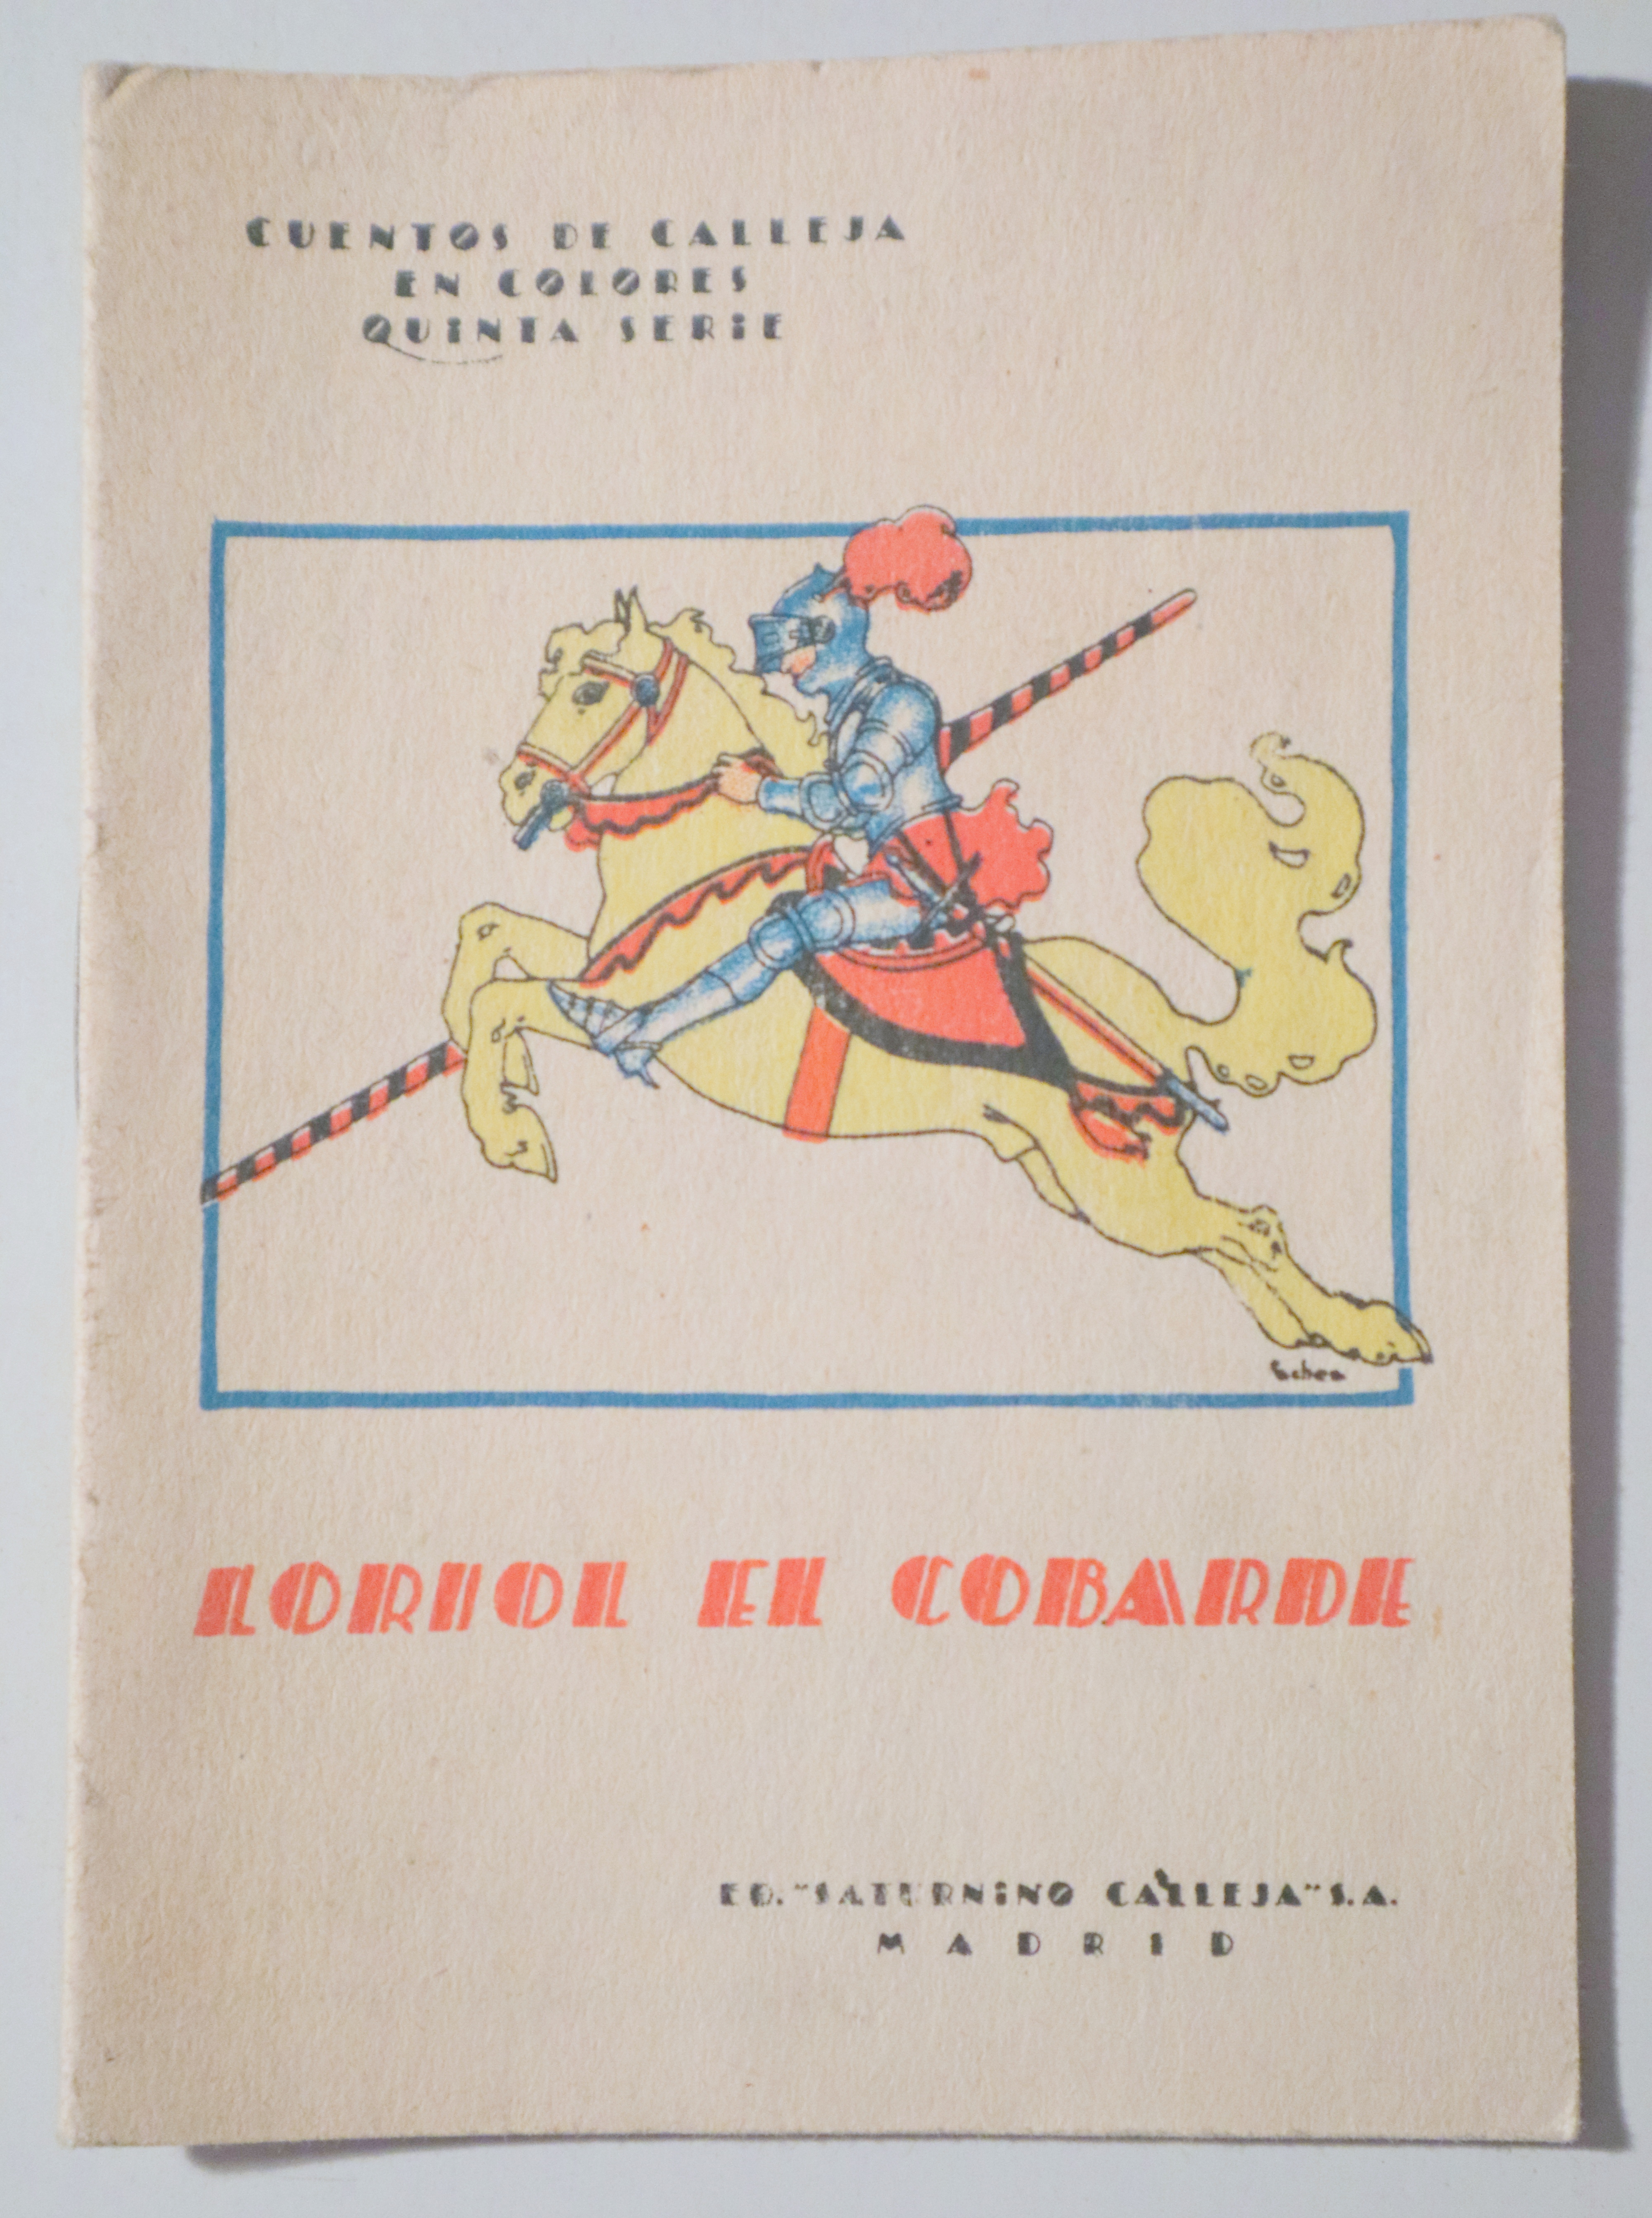 LORIOL EL COBARDE - Madrid c. 1920. - Muy ilustrado